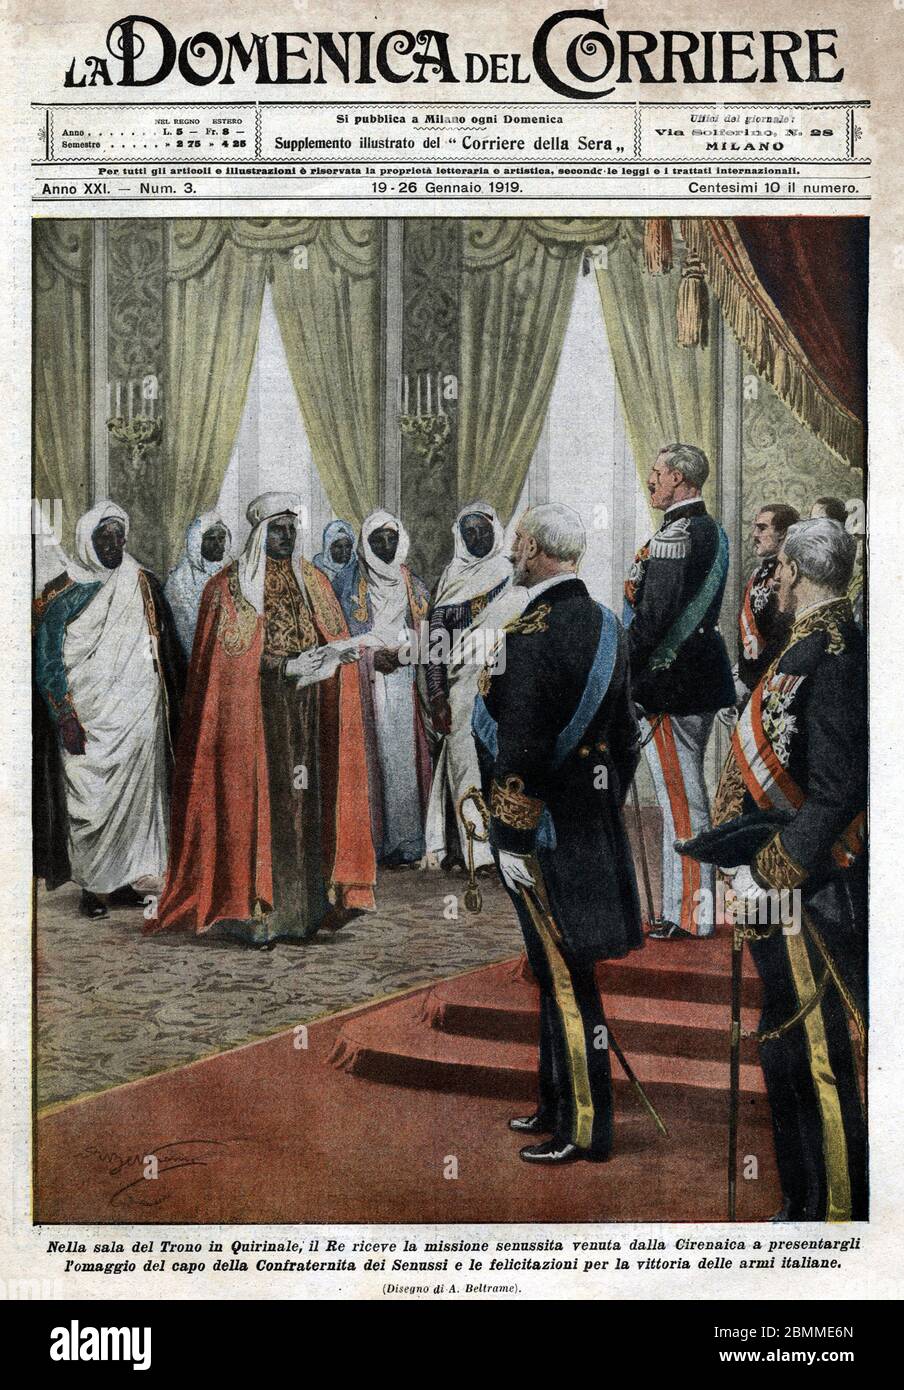 Dans la salle du trone au Palais Quirinale, le roi italie Victor Emmanuel III (Vittorio Emanuele) recoit la mission senoussiste de l Foto Stock